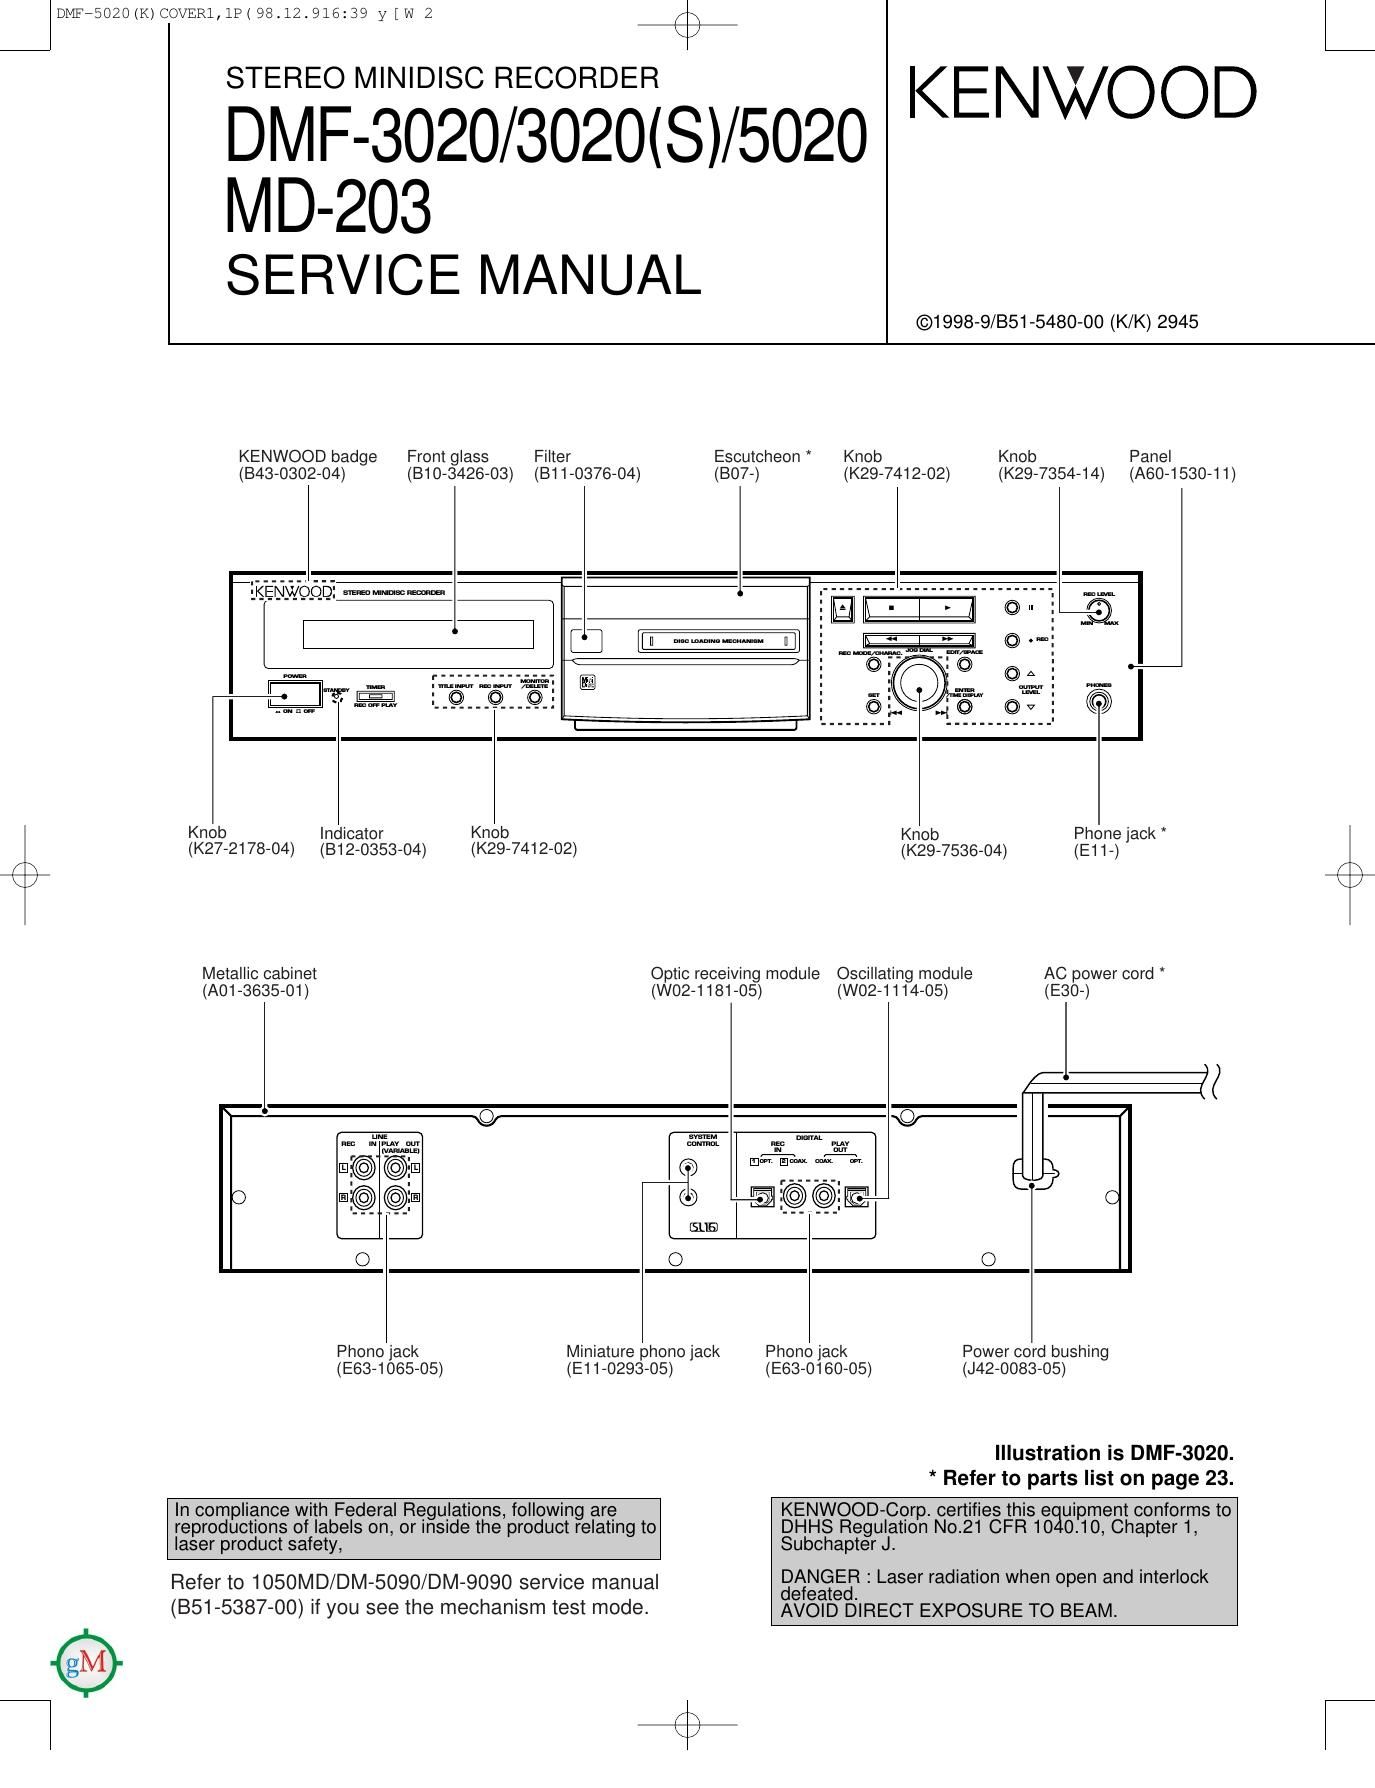 Kenwood DMF 5020 Service Manual